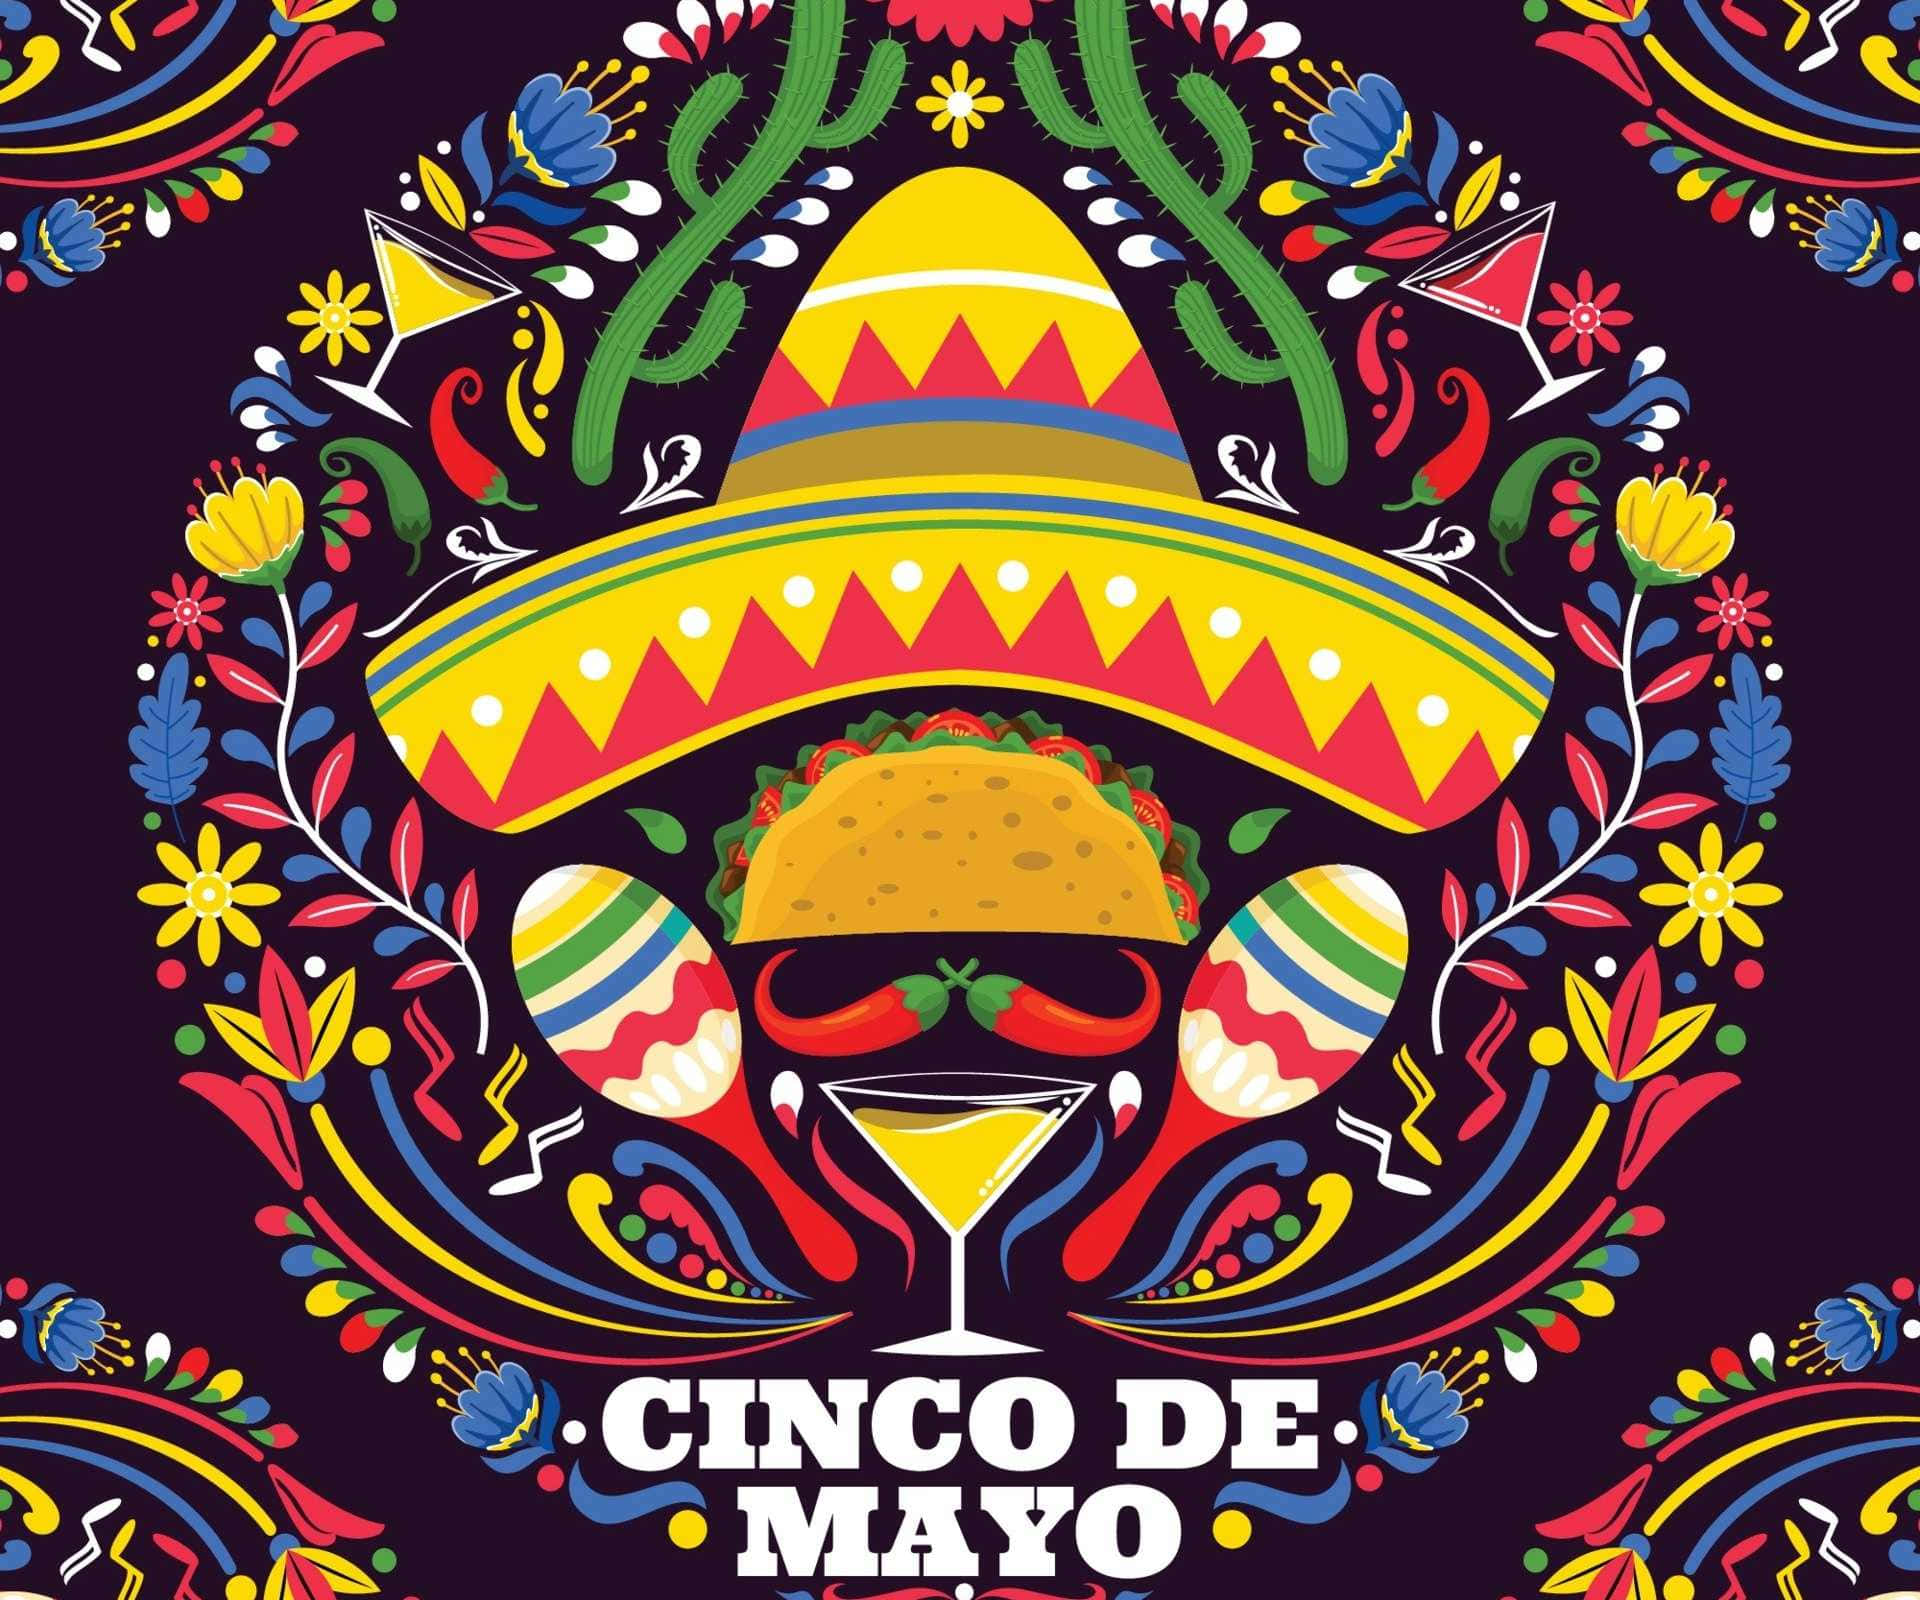 Cincode Mayo Plakat Mit Einem Sombrero Und Tequila. Wallpaper